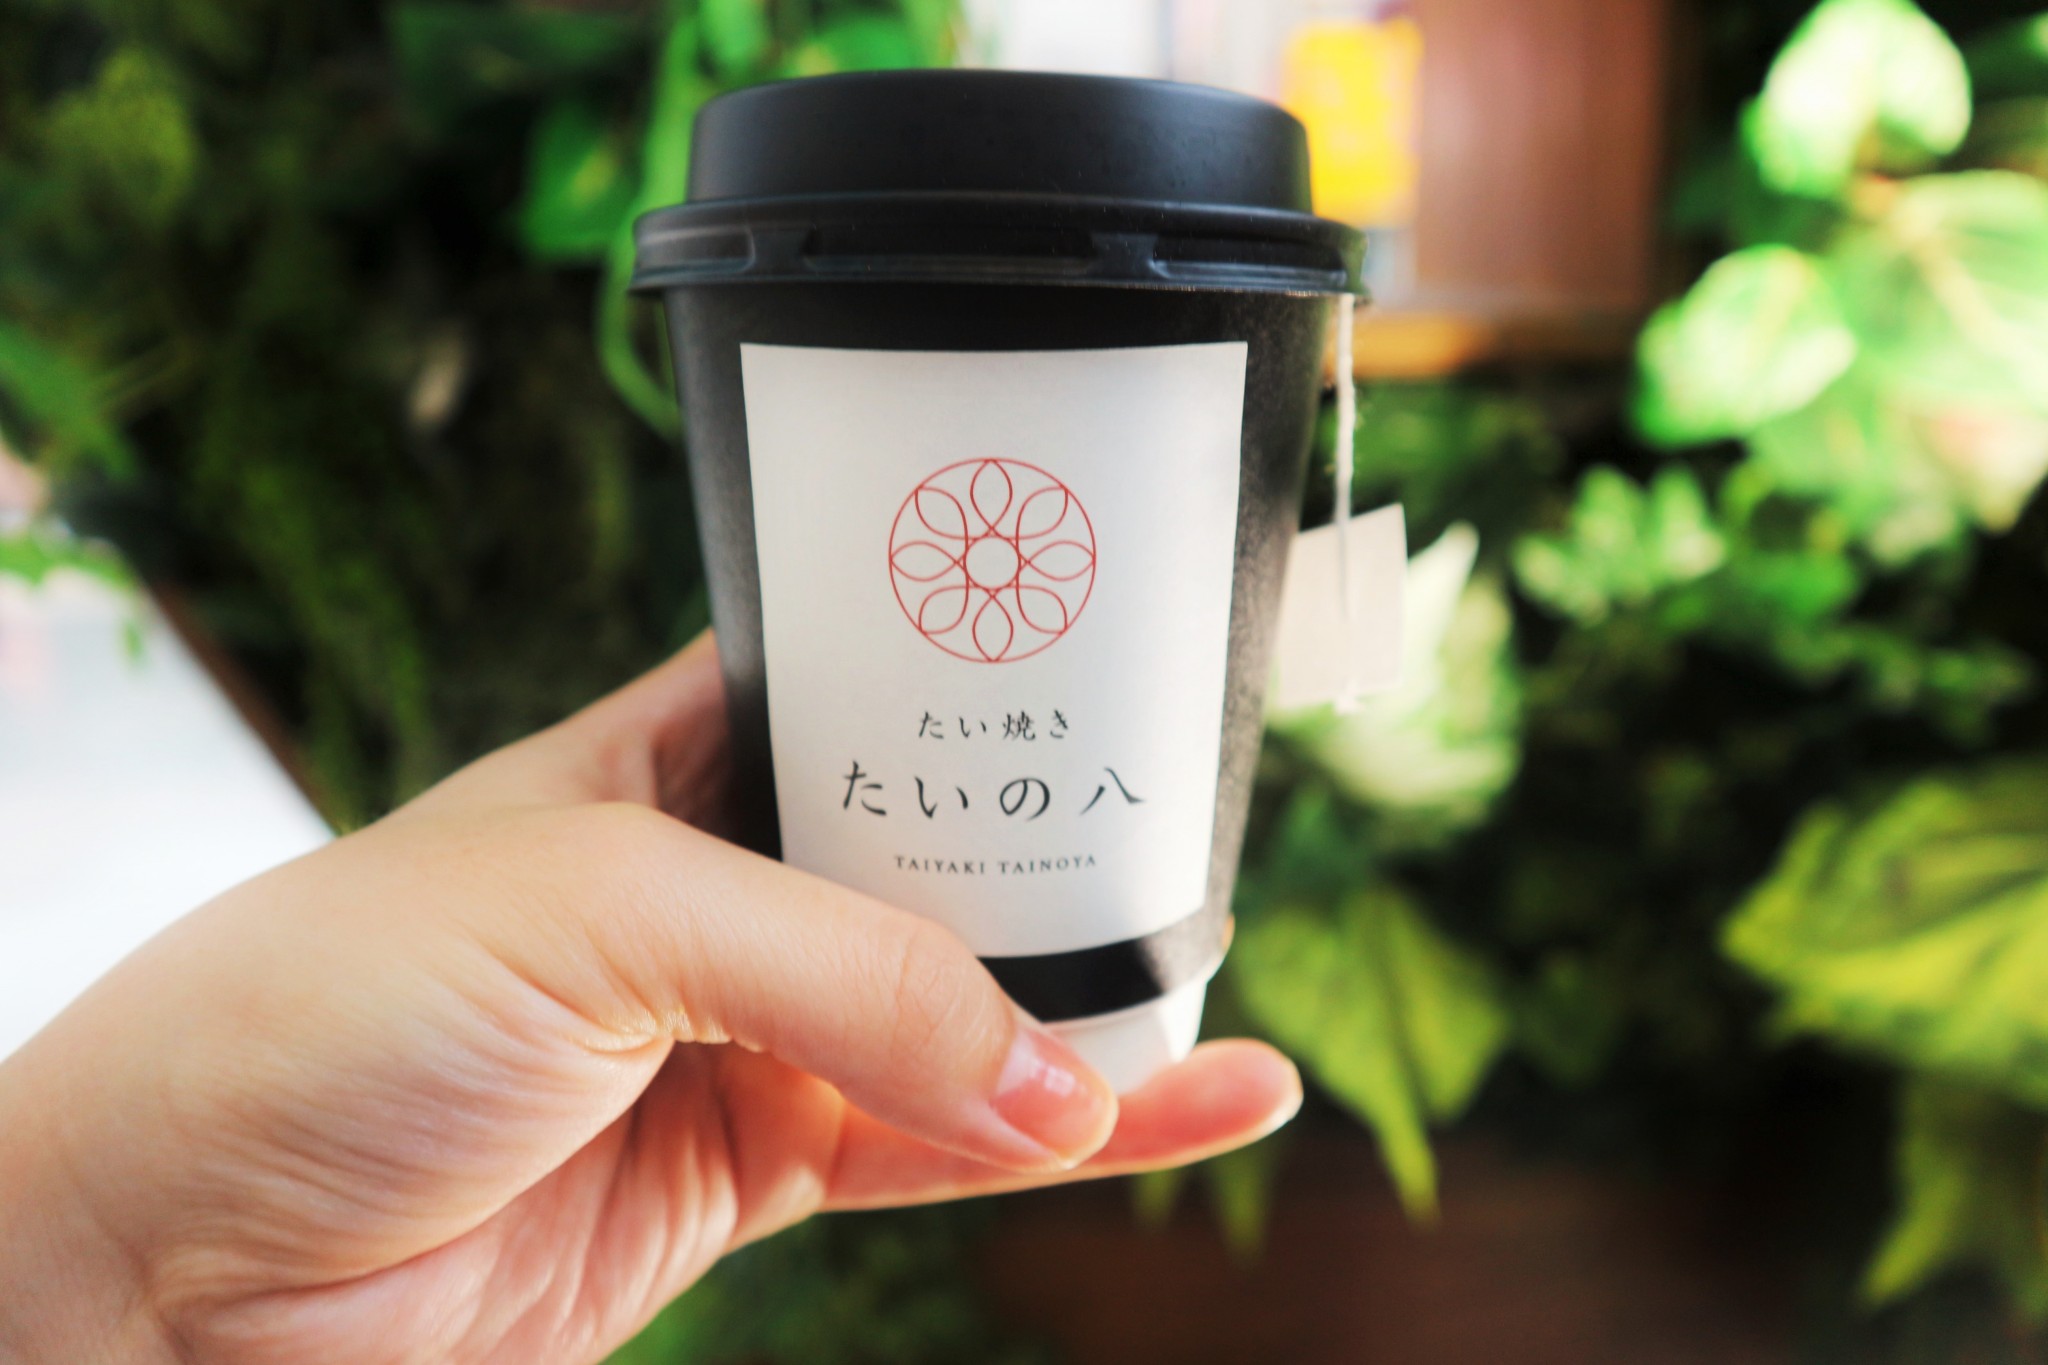 「加賀棒ほうじ茶（冷茶・温茶）」250円。